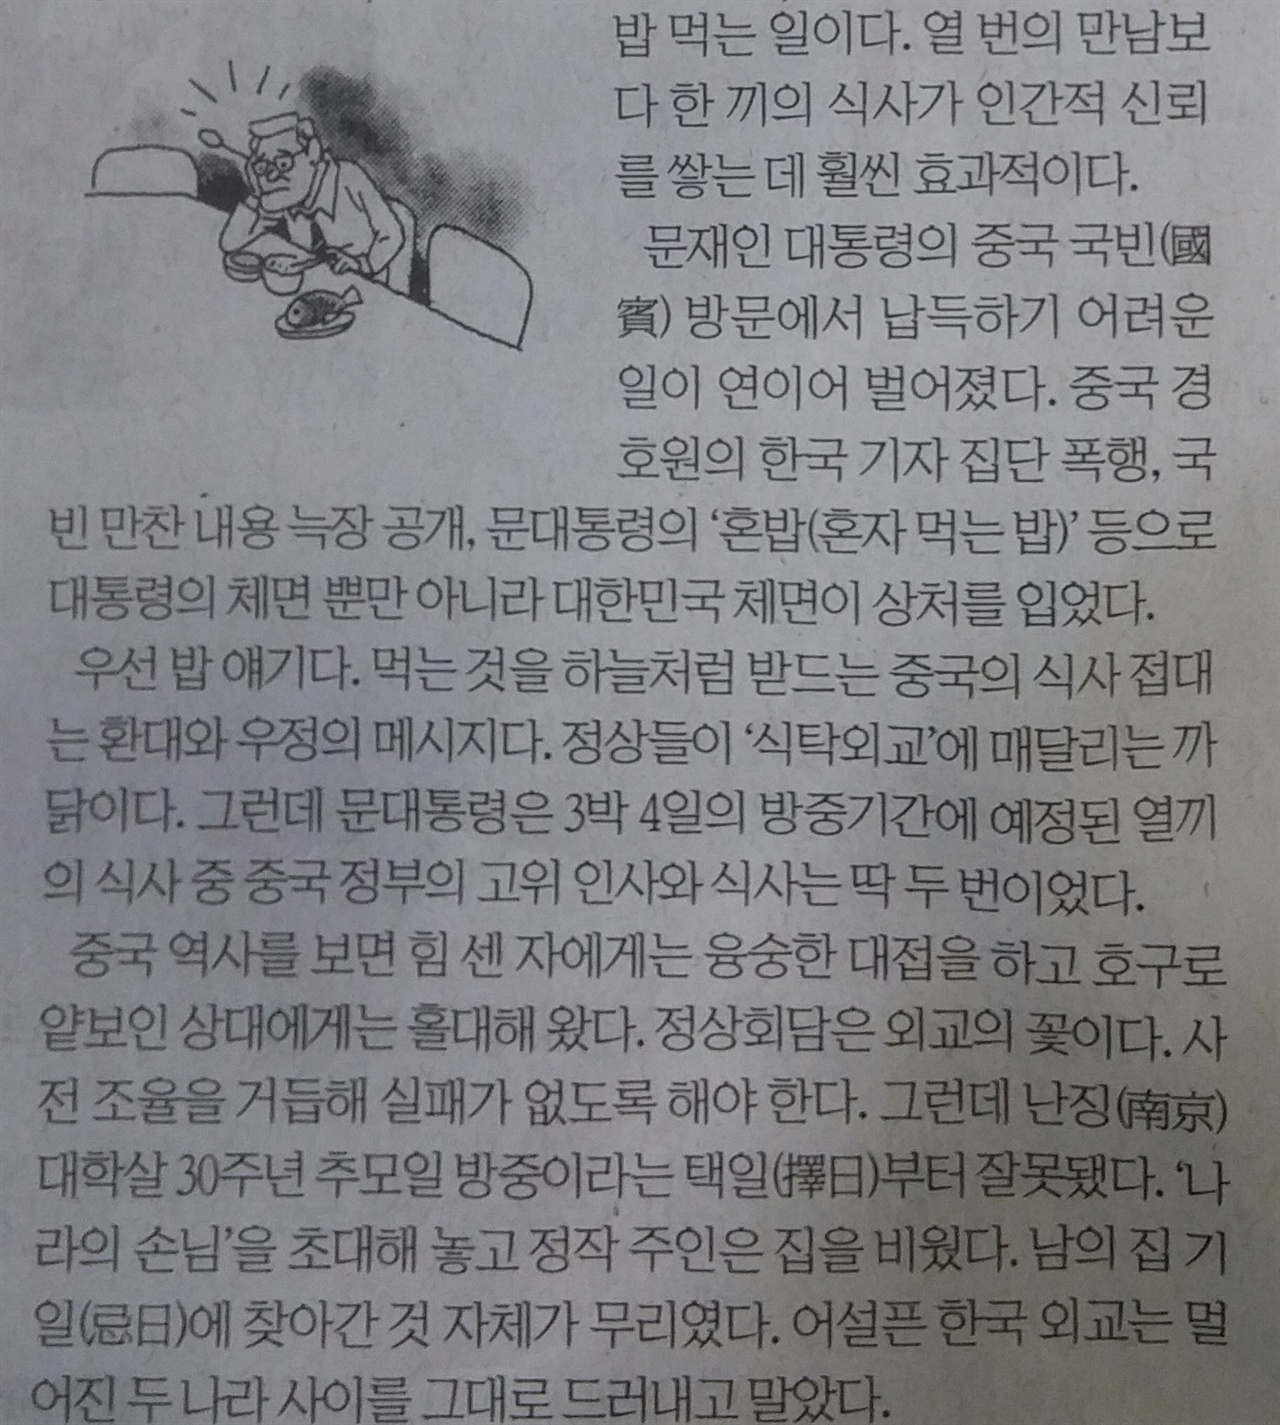 울산지역 일간지 <울산매일> 18일자 신문에 실린 김병길 주필의 칼럼